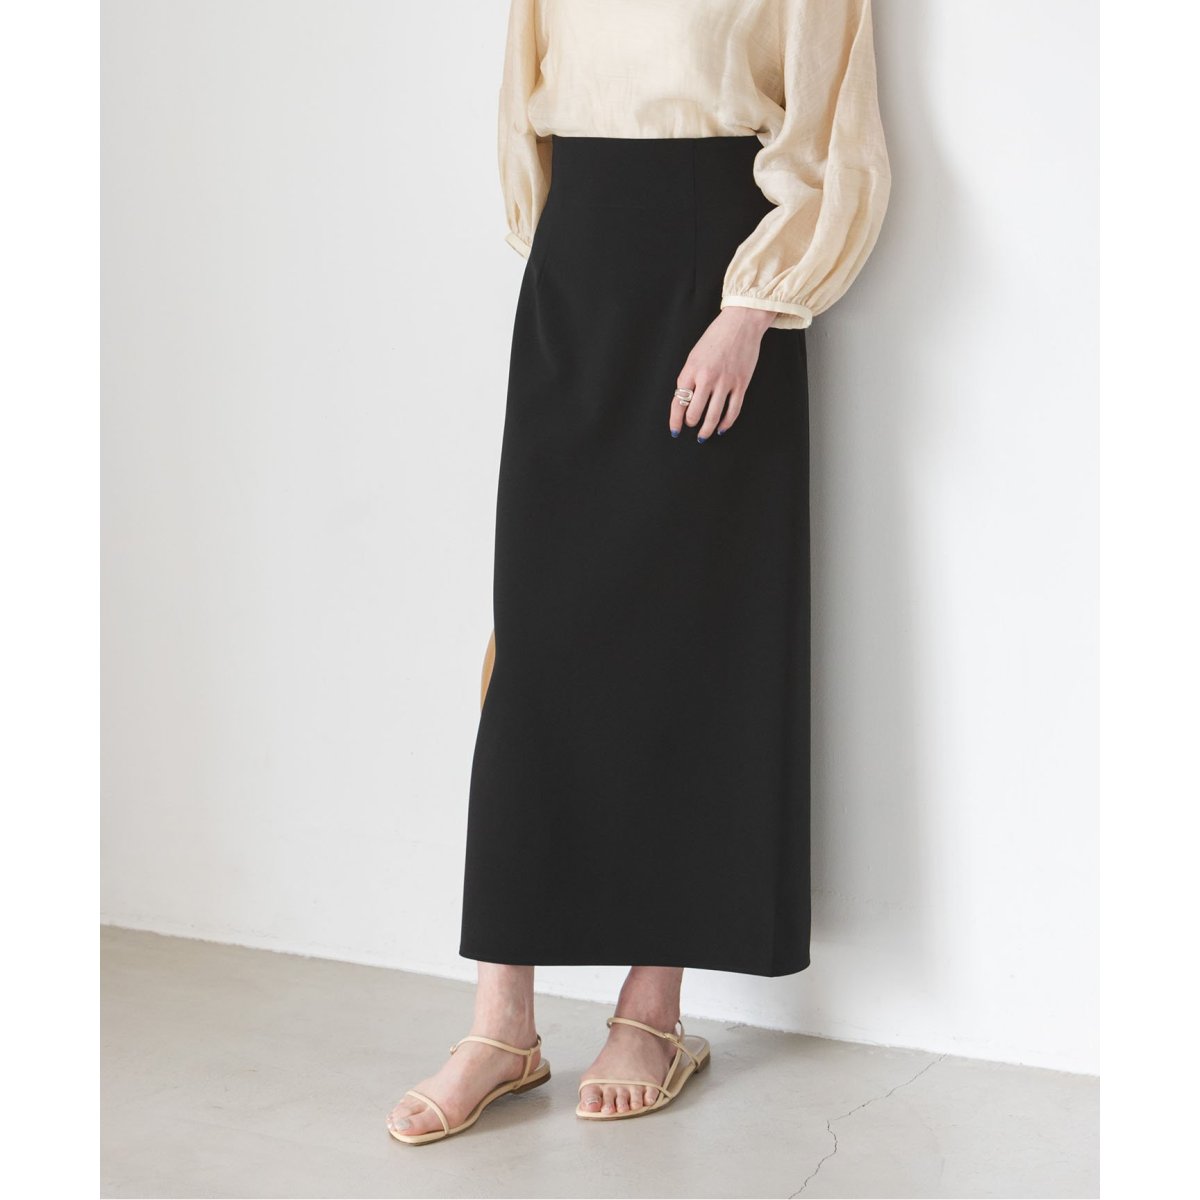 ノーブル(Noble) スカート の通販 | ファッション通販 マルイウェブ